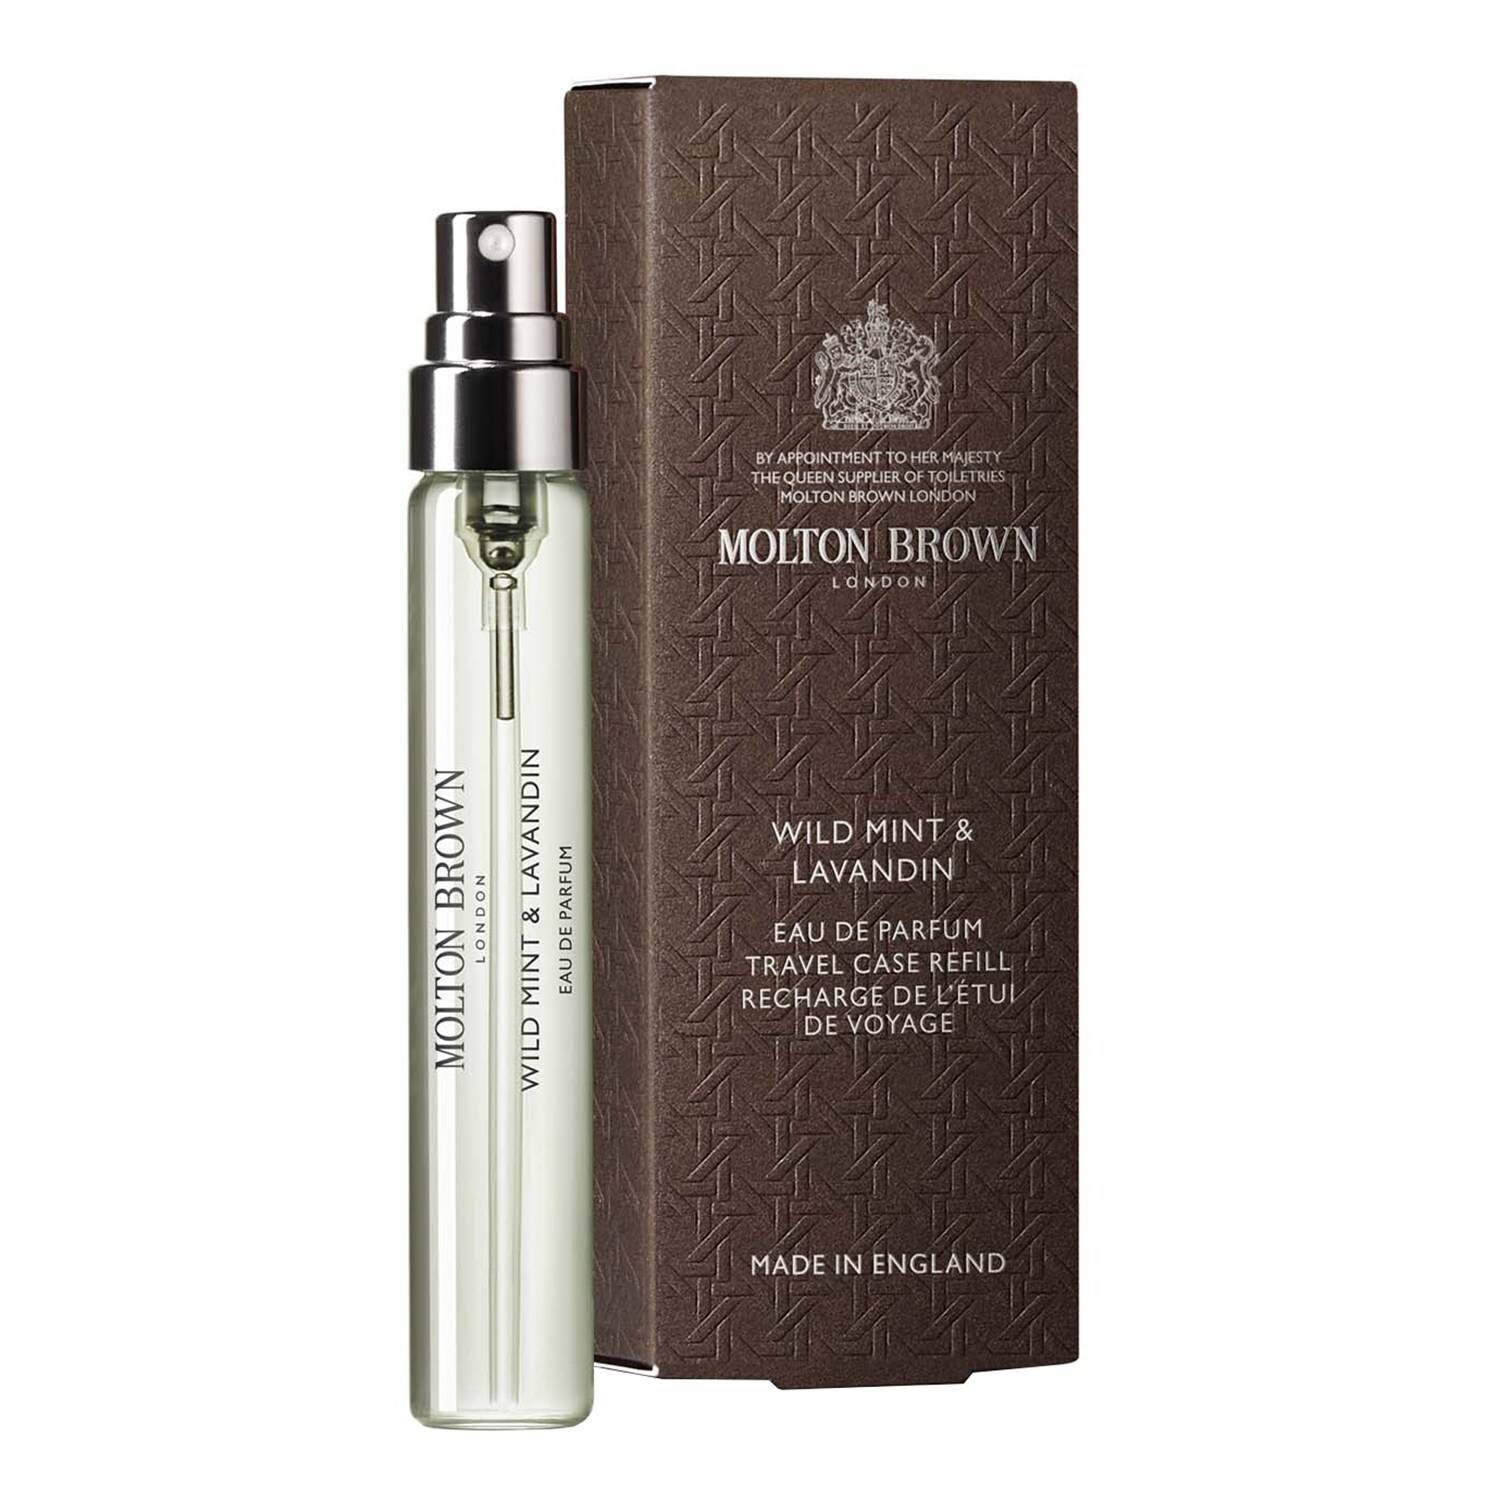 Molton Brown Wild Mint & Lavandin Eau De Parfum 7.5Ml